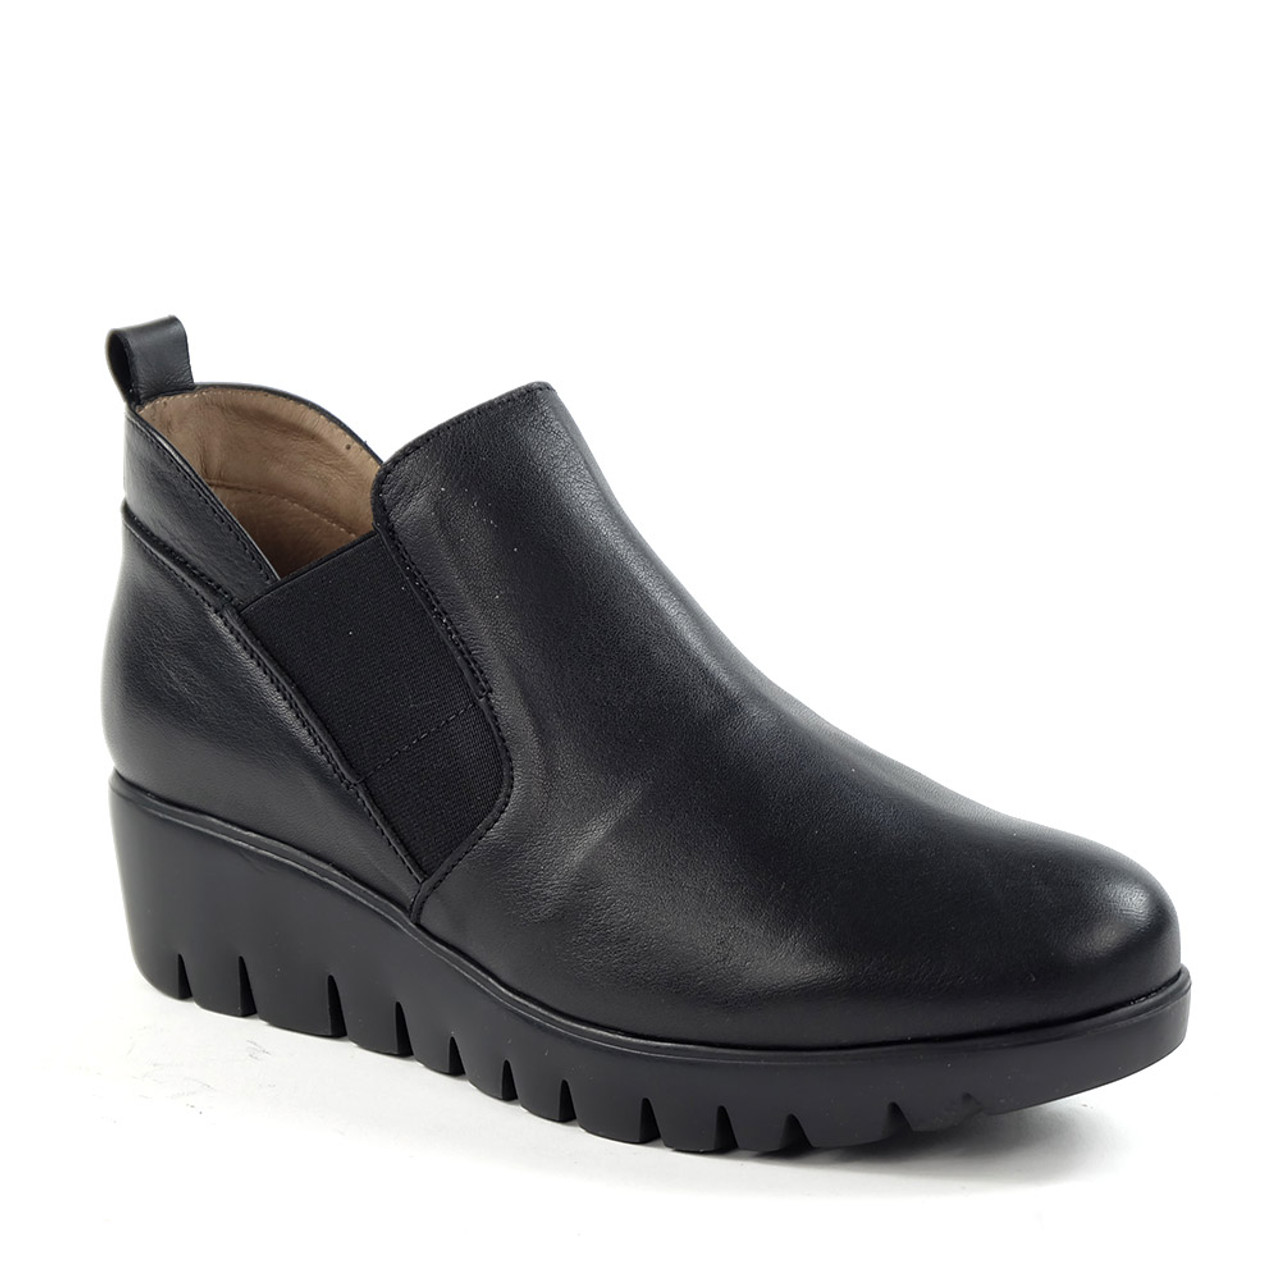 Wonders C-33176 Boot in Black Leather — Hanig's Footwear